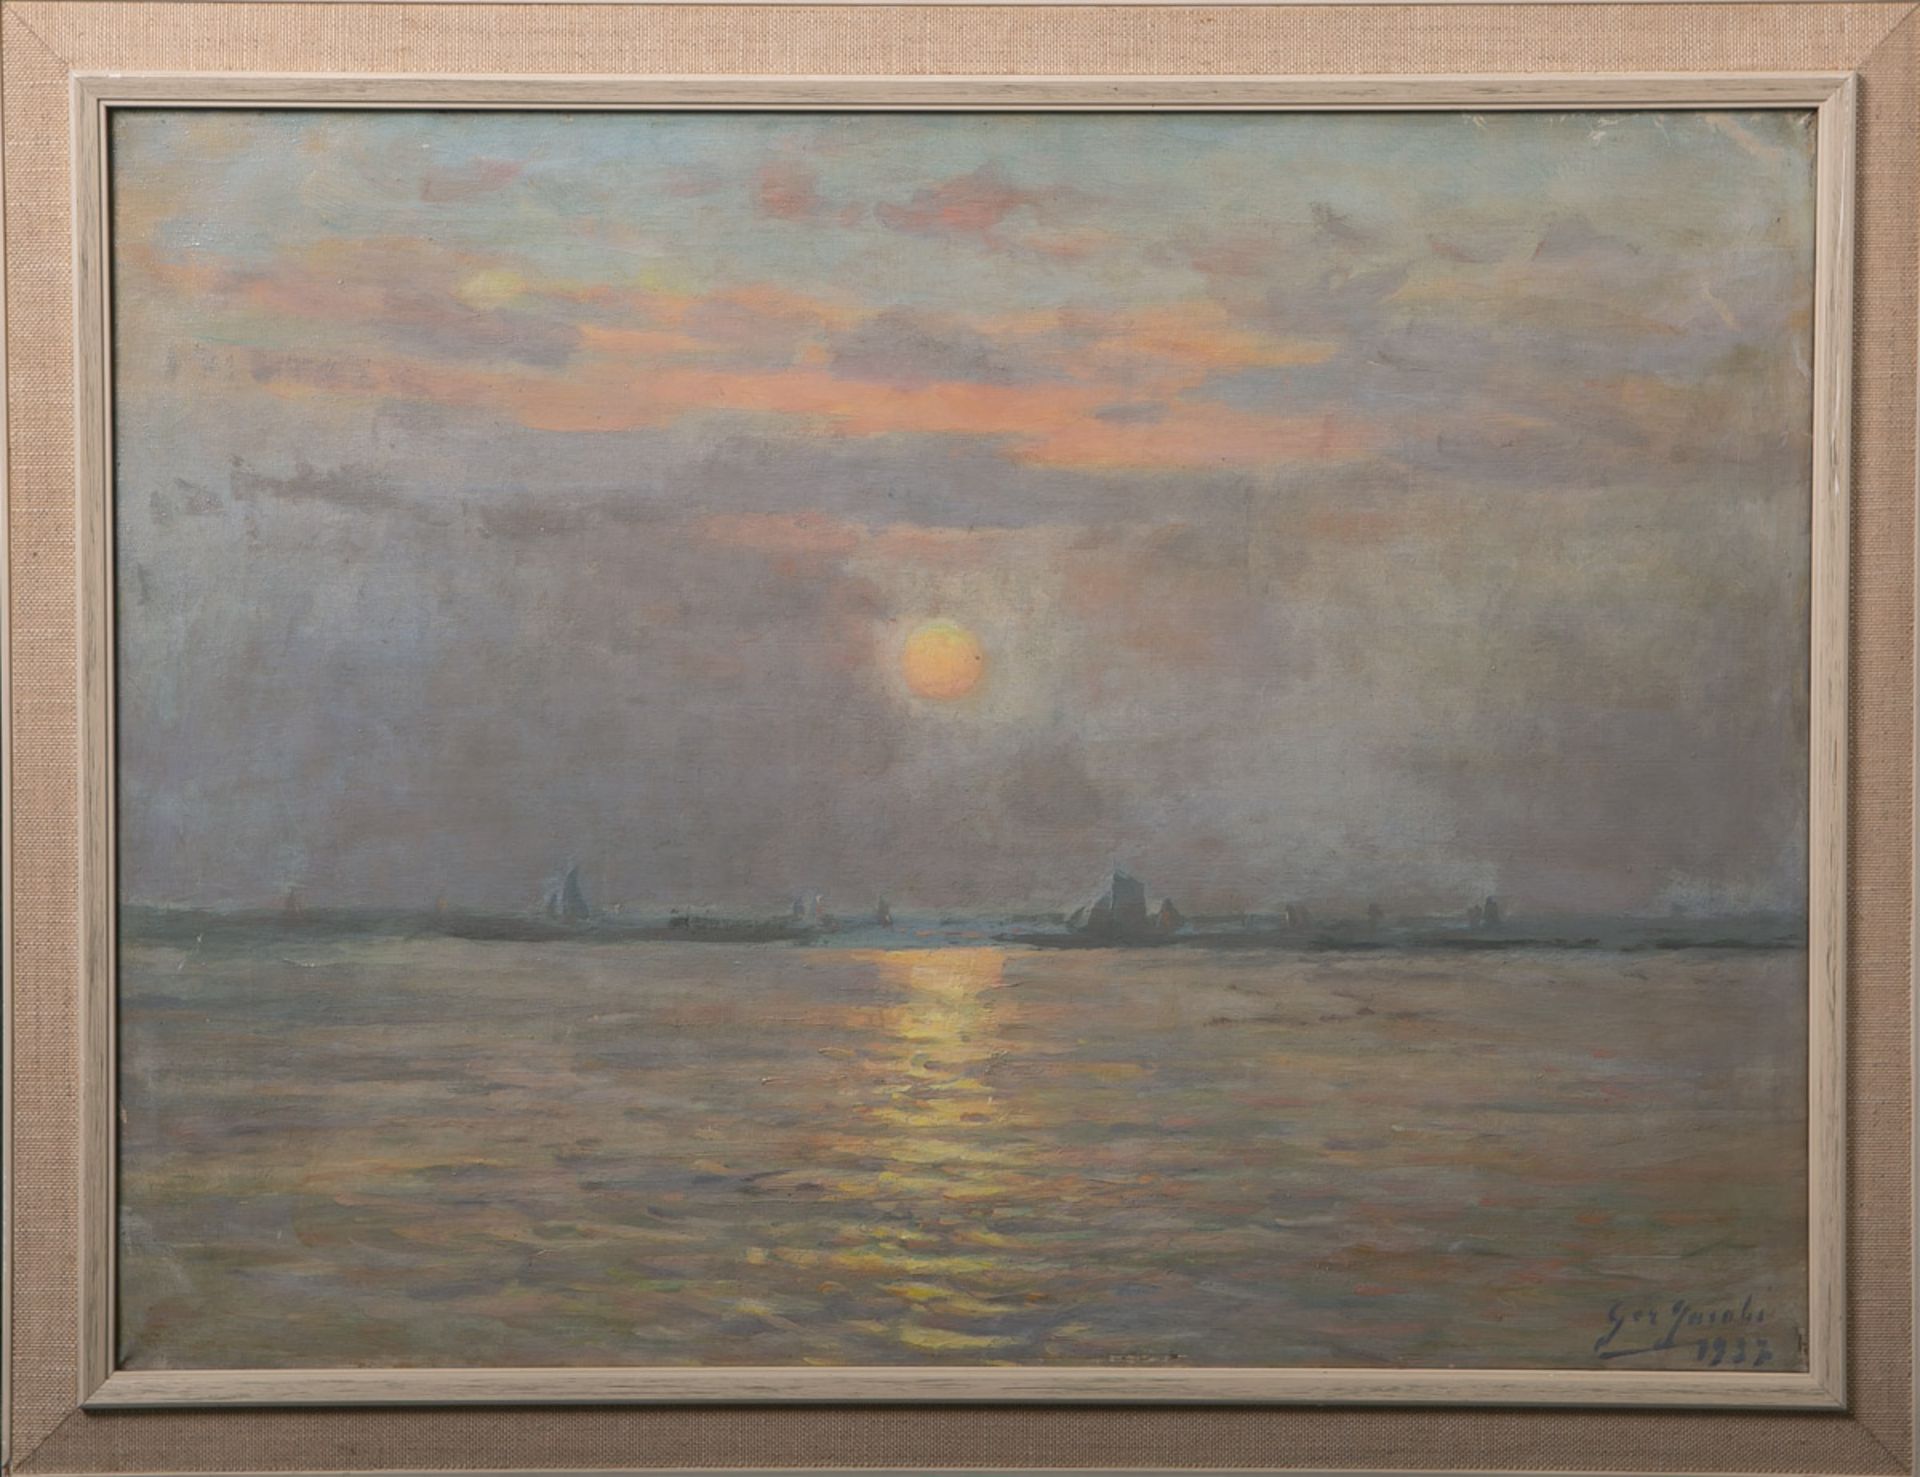 Jacobs, Gerard (1865 - 1958), Küste bei Sonnenuntergang